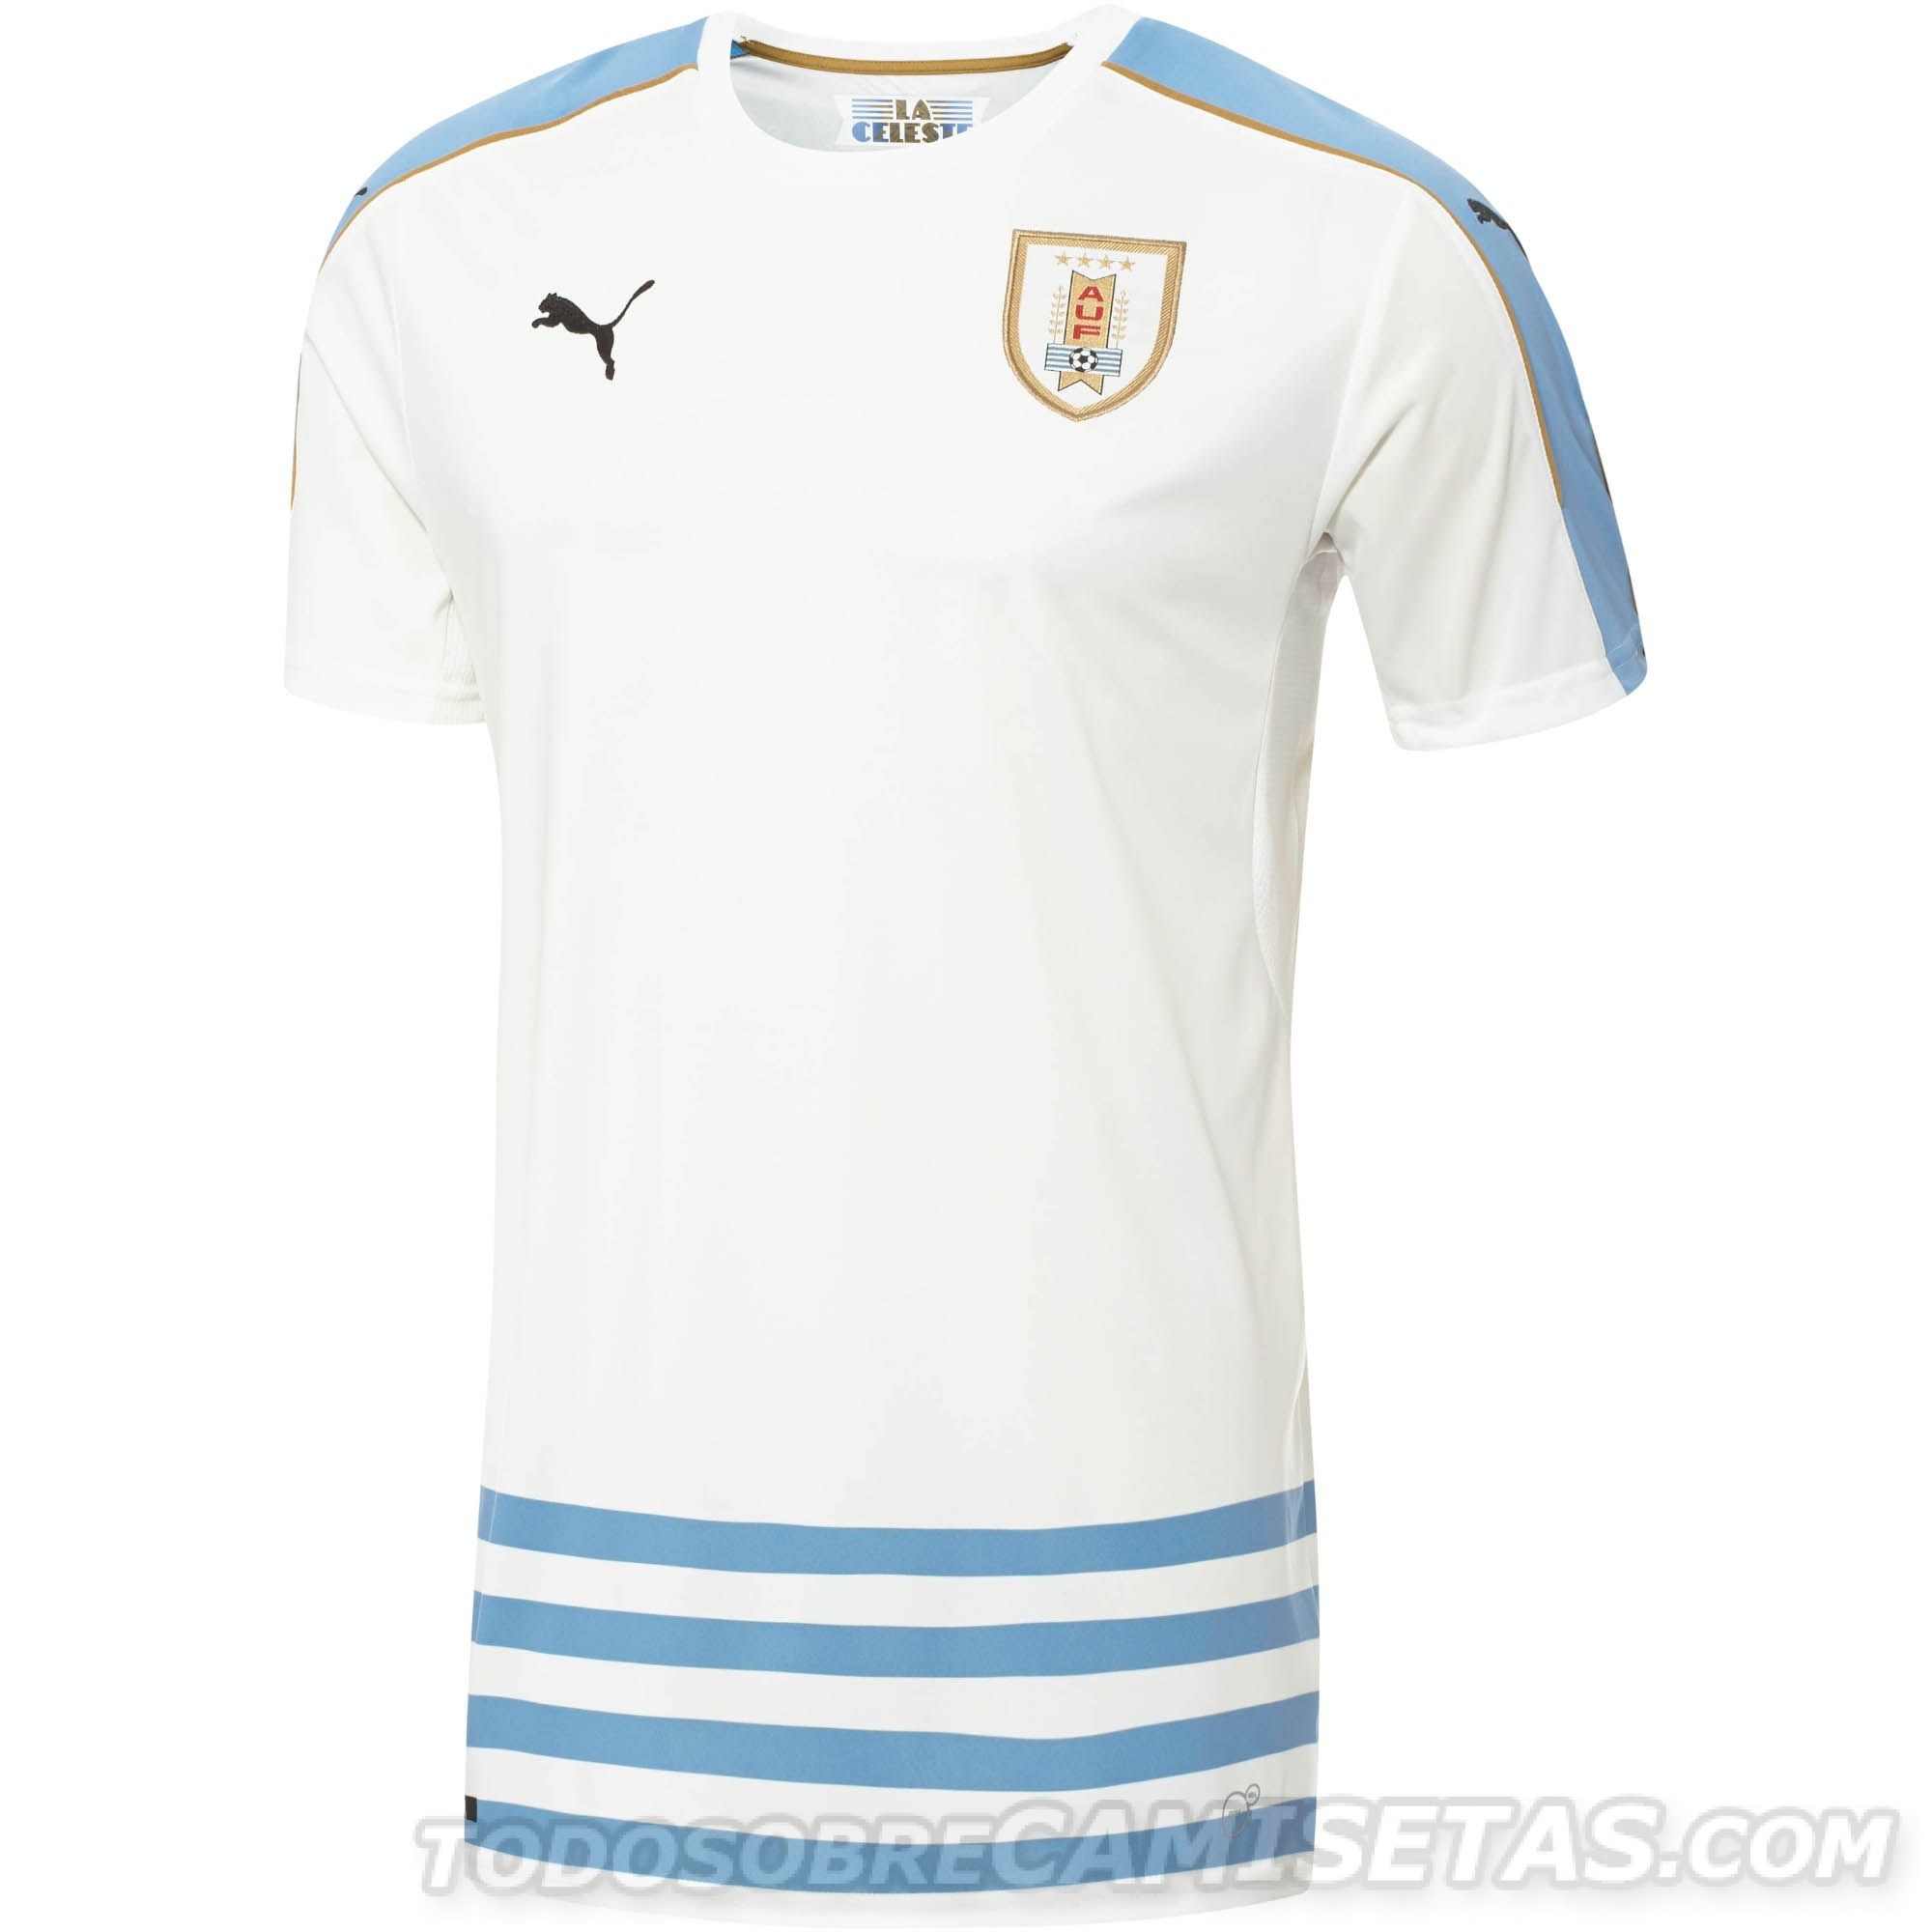 Camisetas Puma de Uruguay 2016 (Copa America Centenario)